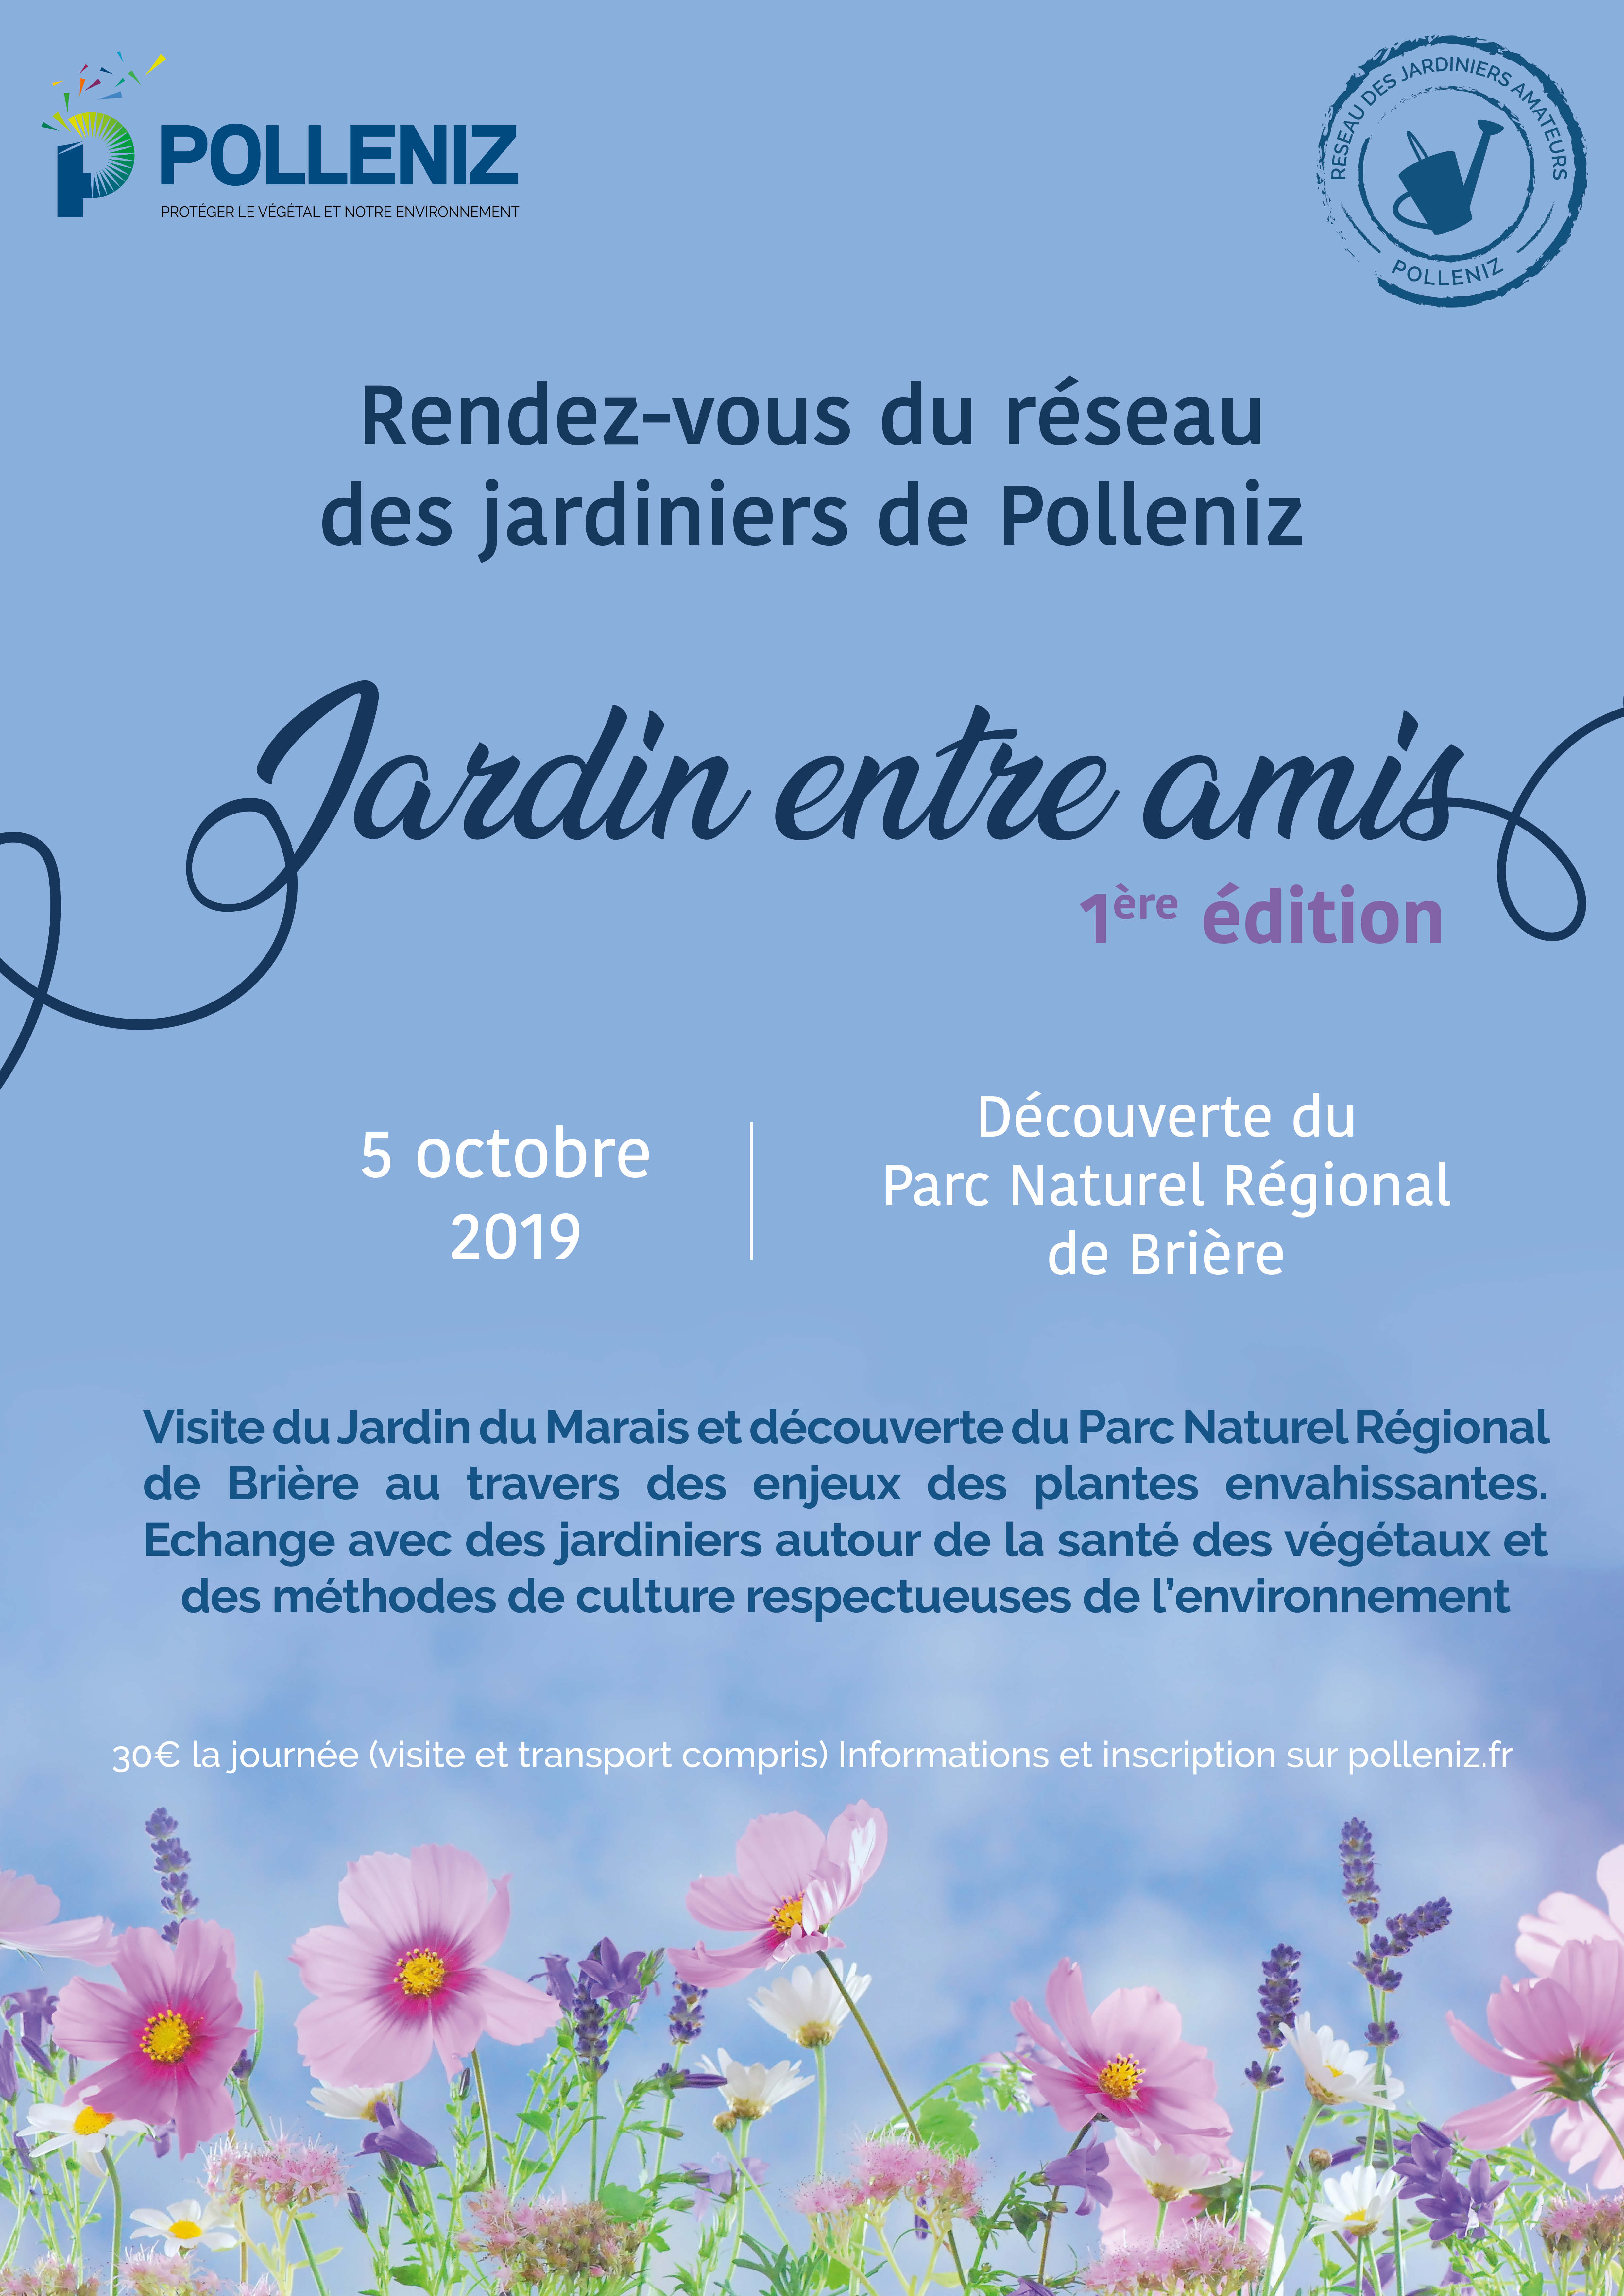 Jardin entre amis – Découverte du Parc Naturel Régional de Brière le 5 octobre 2019